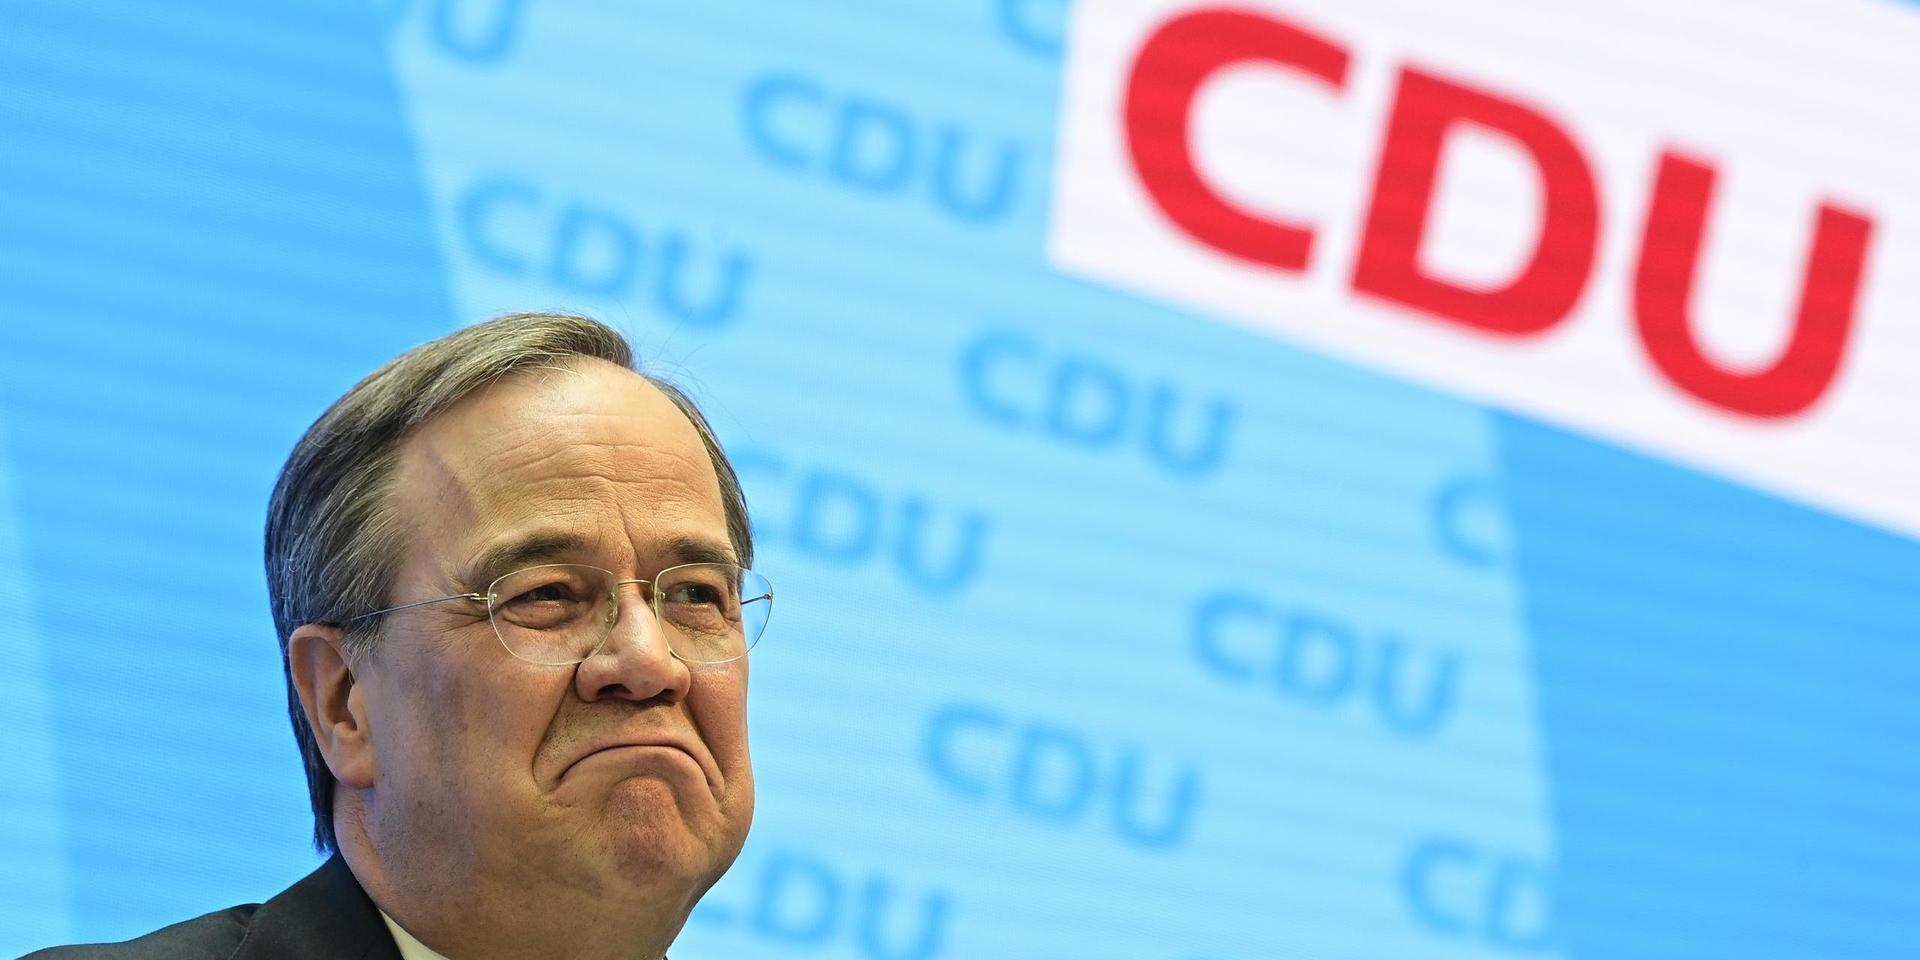 CDU:s ordförande Armin Laschet under en pressträff vid partiets högkvarter i Berlin efter Markus Söders besked.